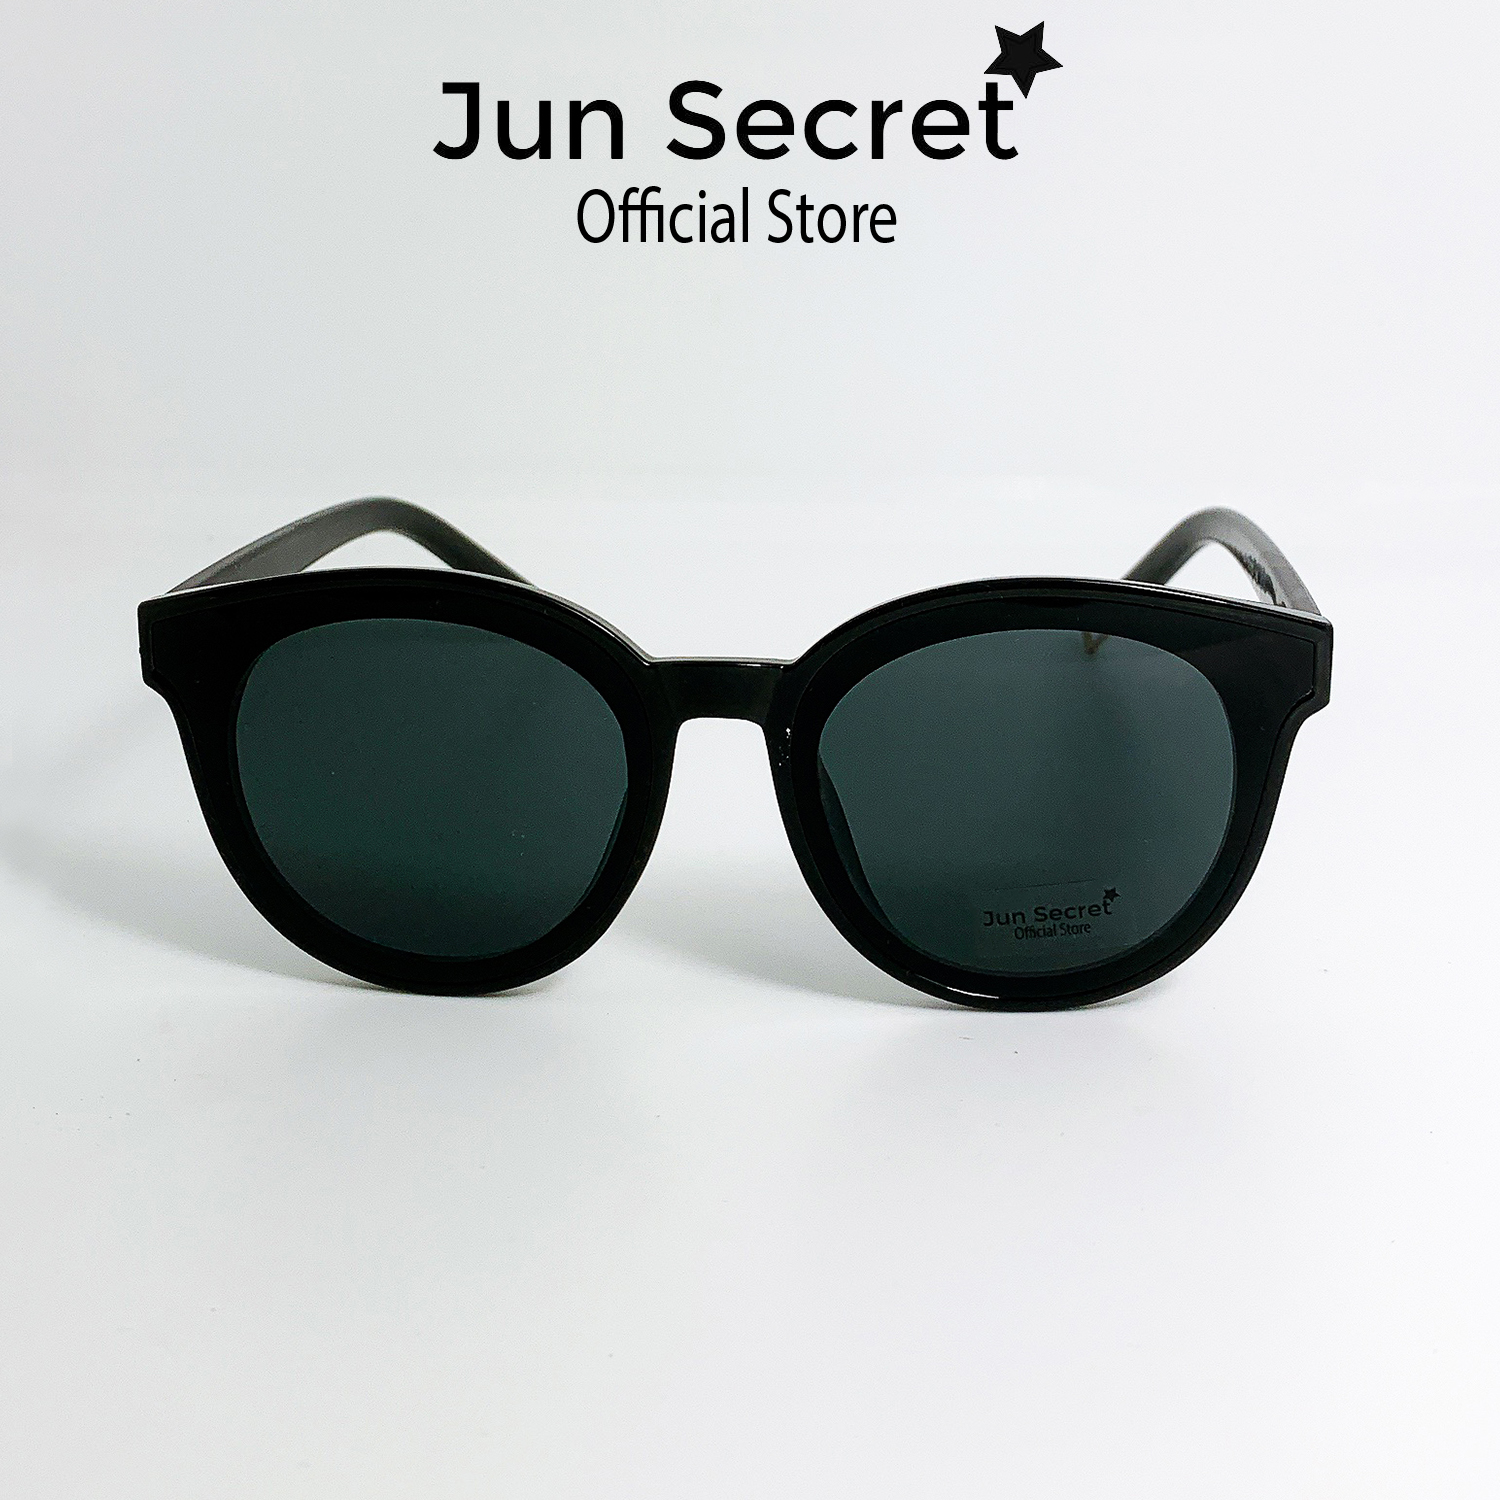 Kính mát nữ thời trang gọng nhựa ôm mặt, tròng kính chống tia UV  Jun Secret JS337